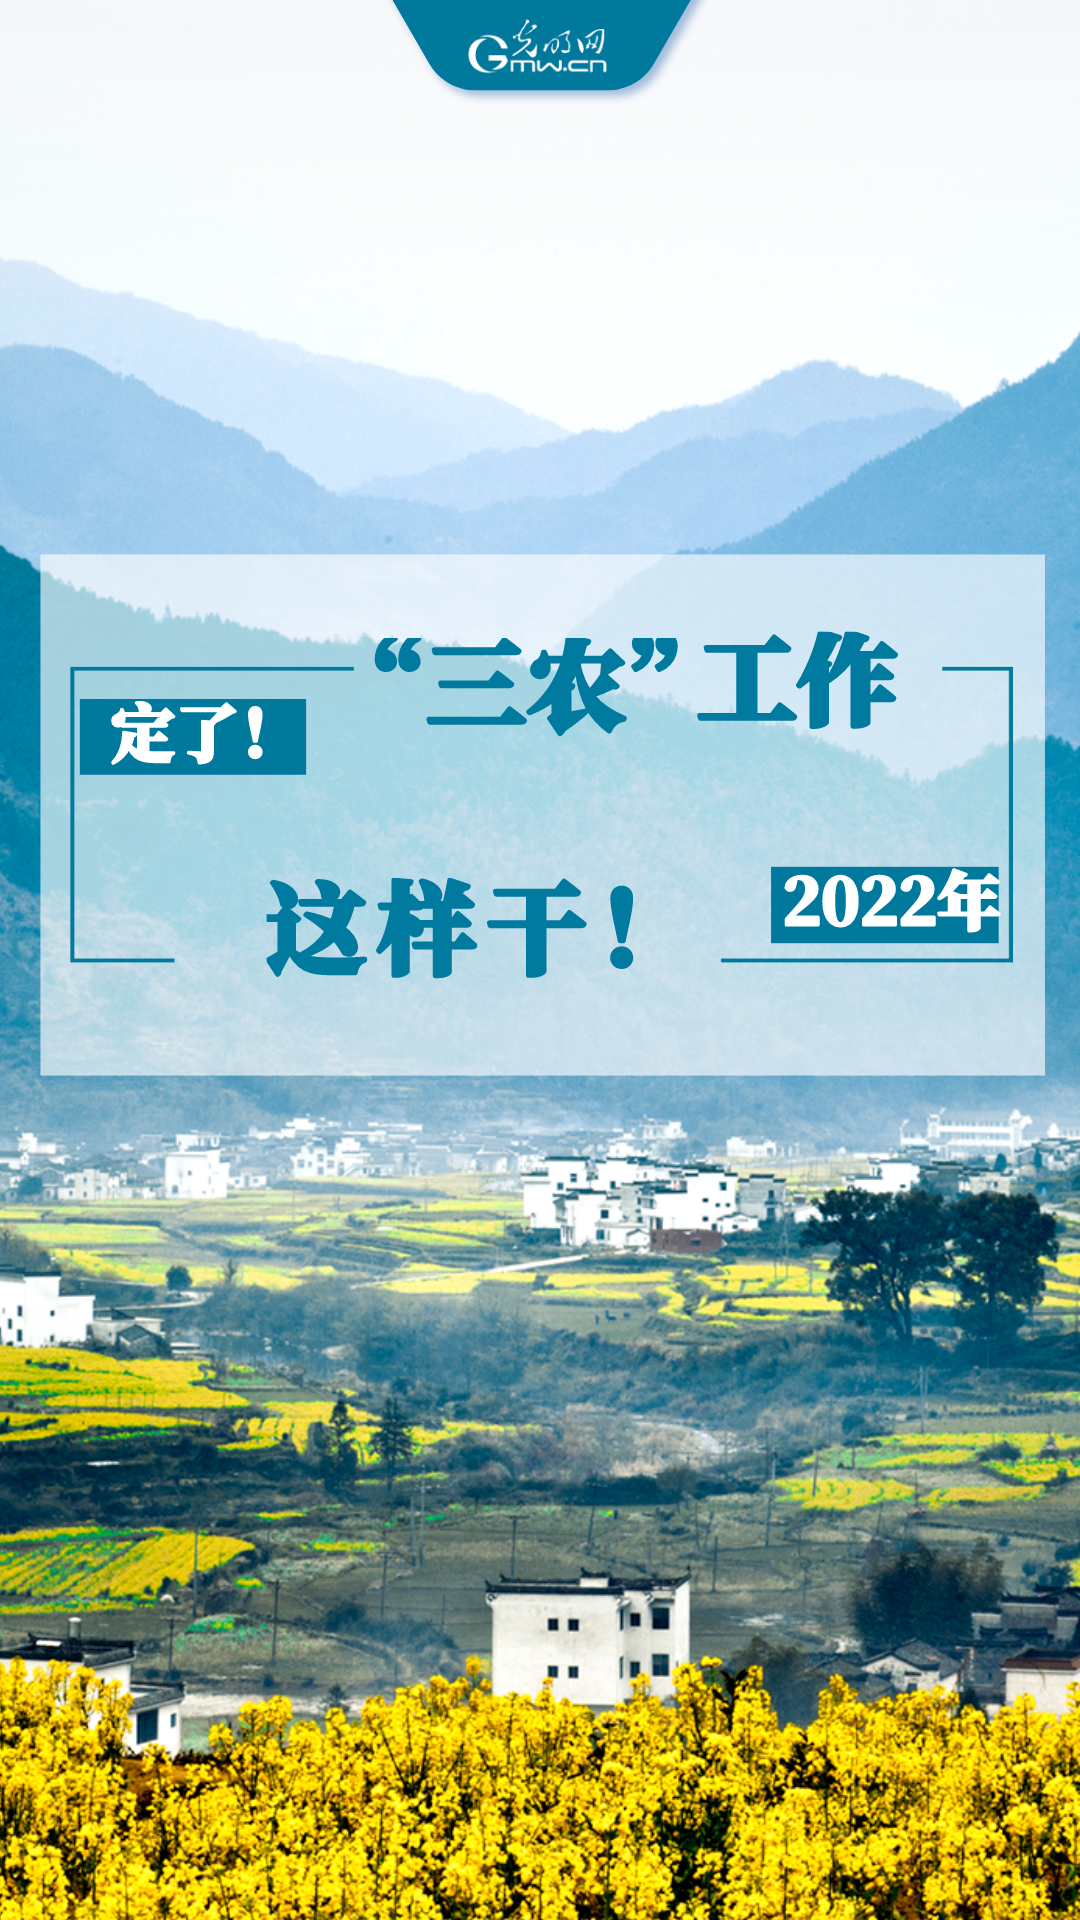 【海报】定了！2022年“三农”工作这样干！